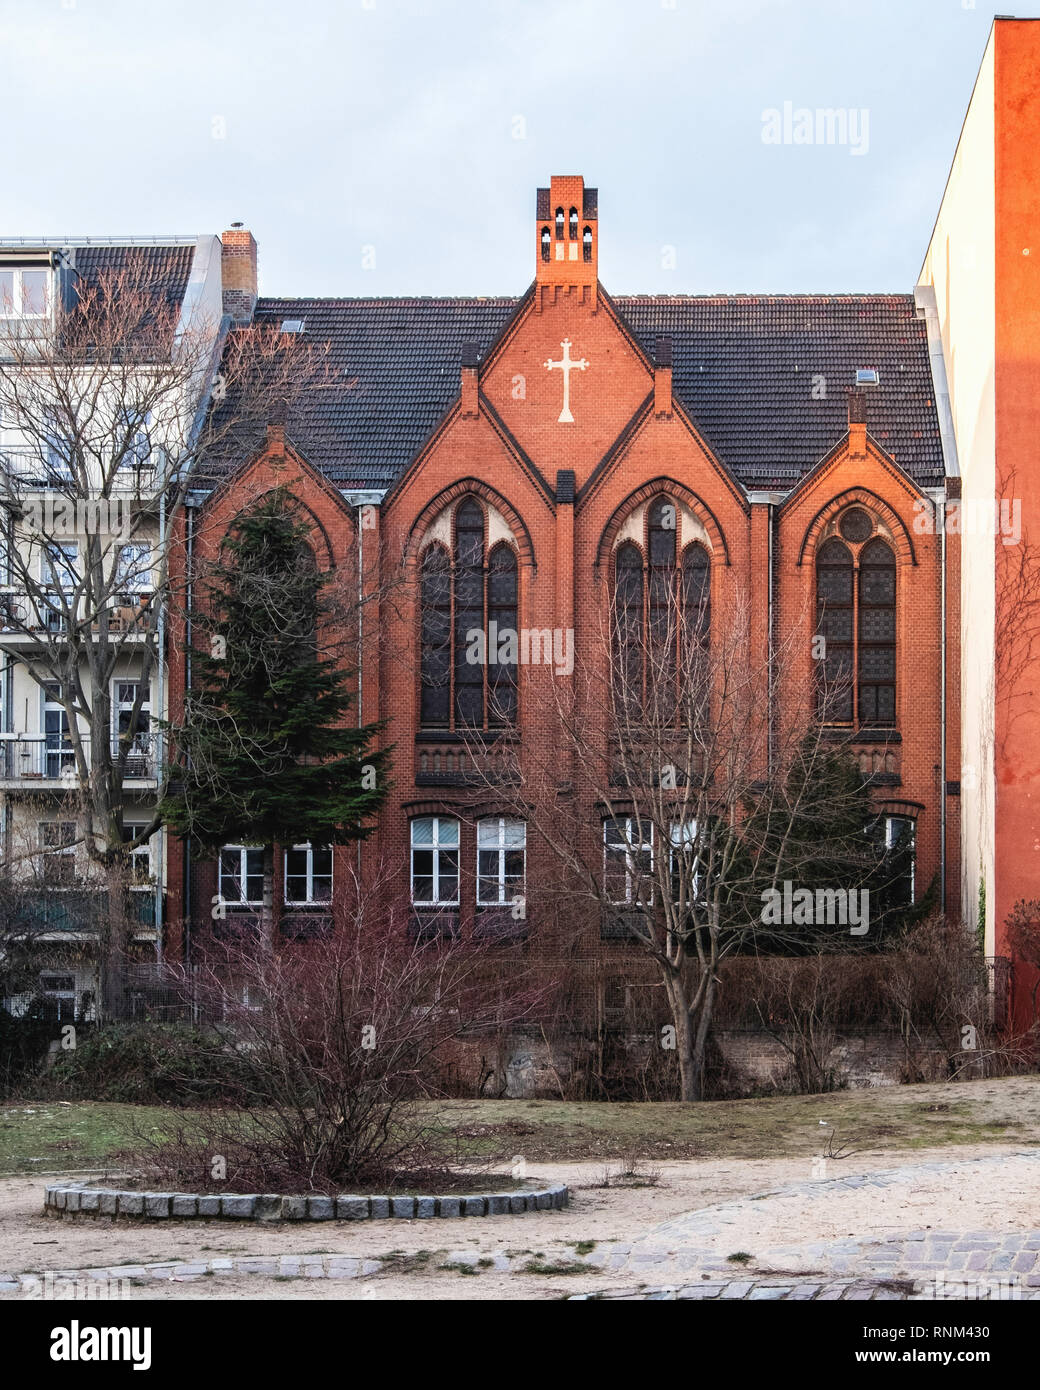 Berlín, Mitte, iglesia del Redentor Protestant-Methodist, diseñado en 1905 por Carl Breuer. Listados histórico alemán Norte edificio de estilo gótico de ladrillo Foto de stock